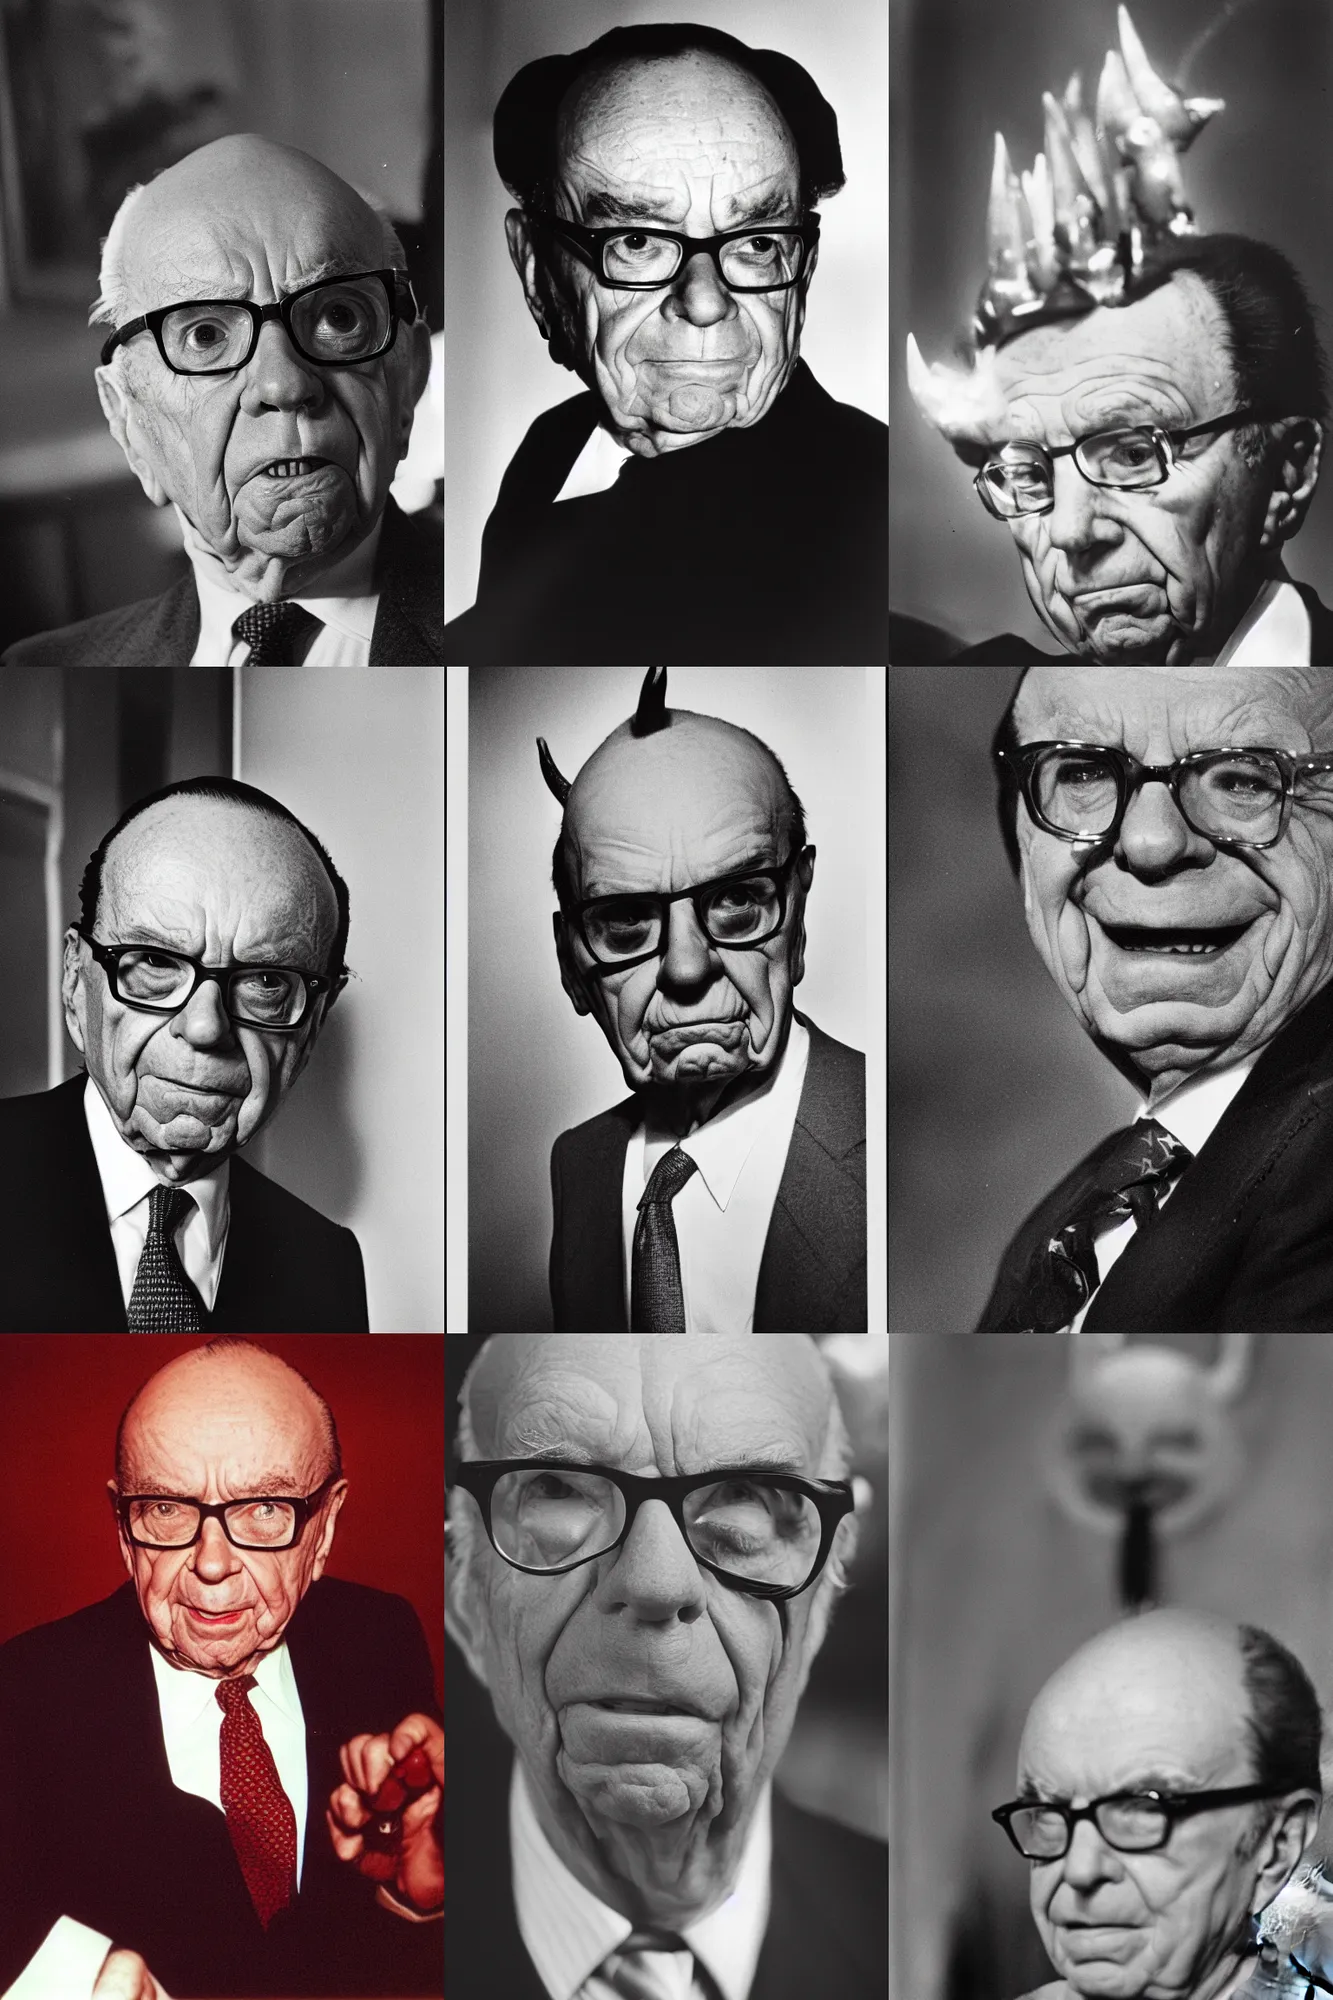 Prompt: Rupert Murdoch as the devil, portrait photograph, film grain